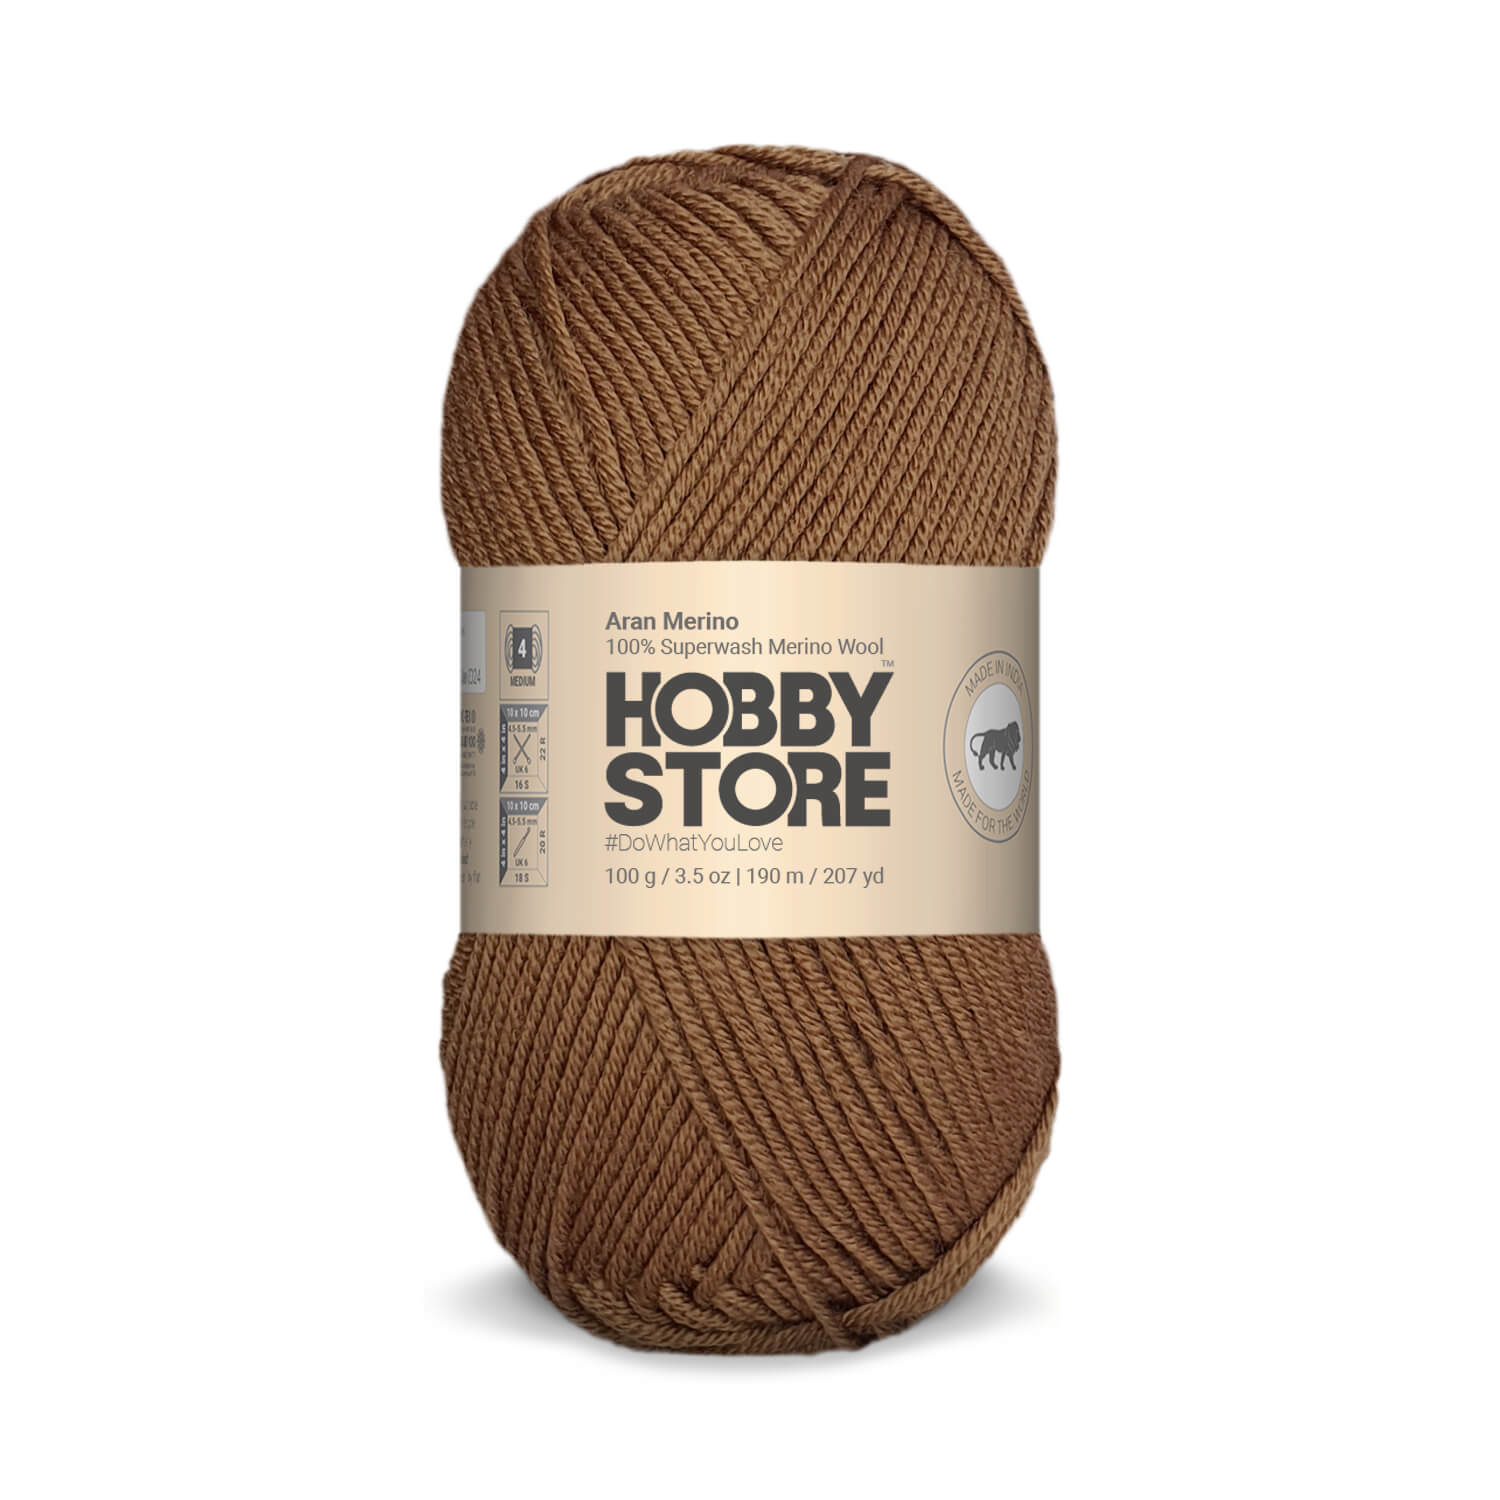 Aran Merino Wool by Hobby Store - Brown AM020